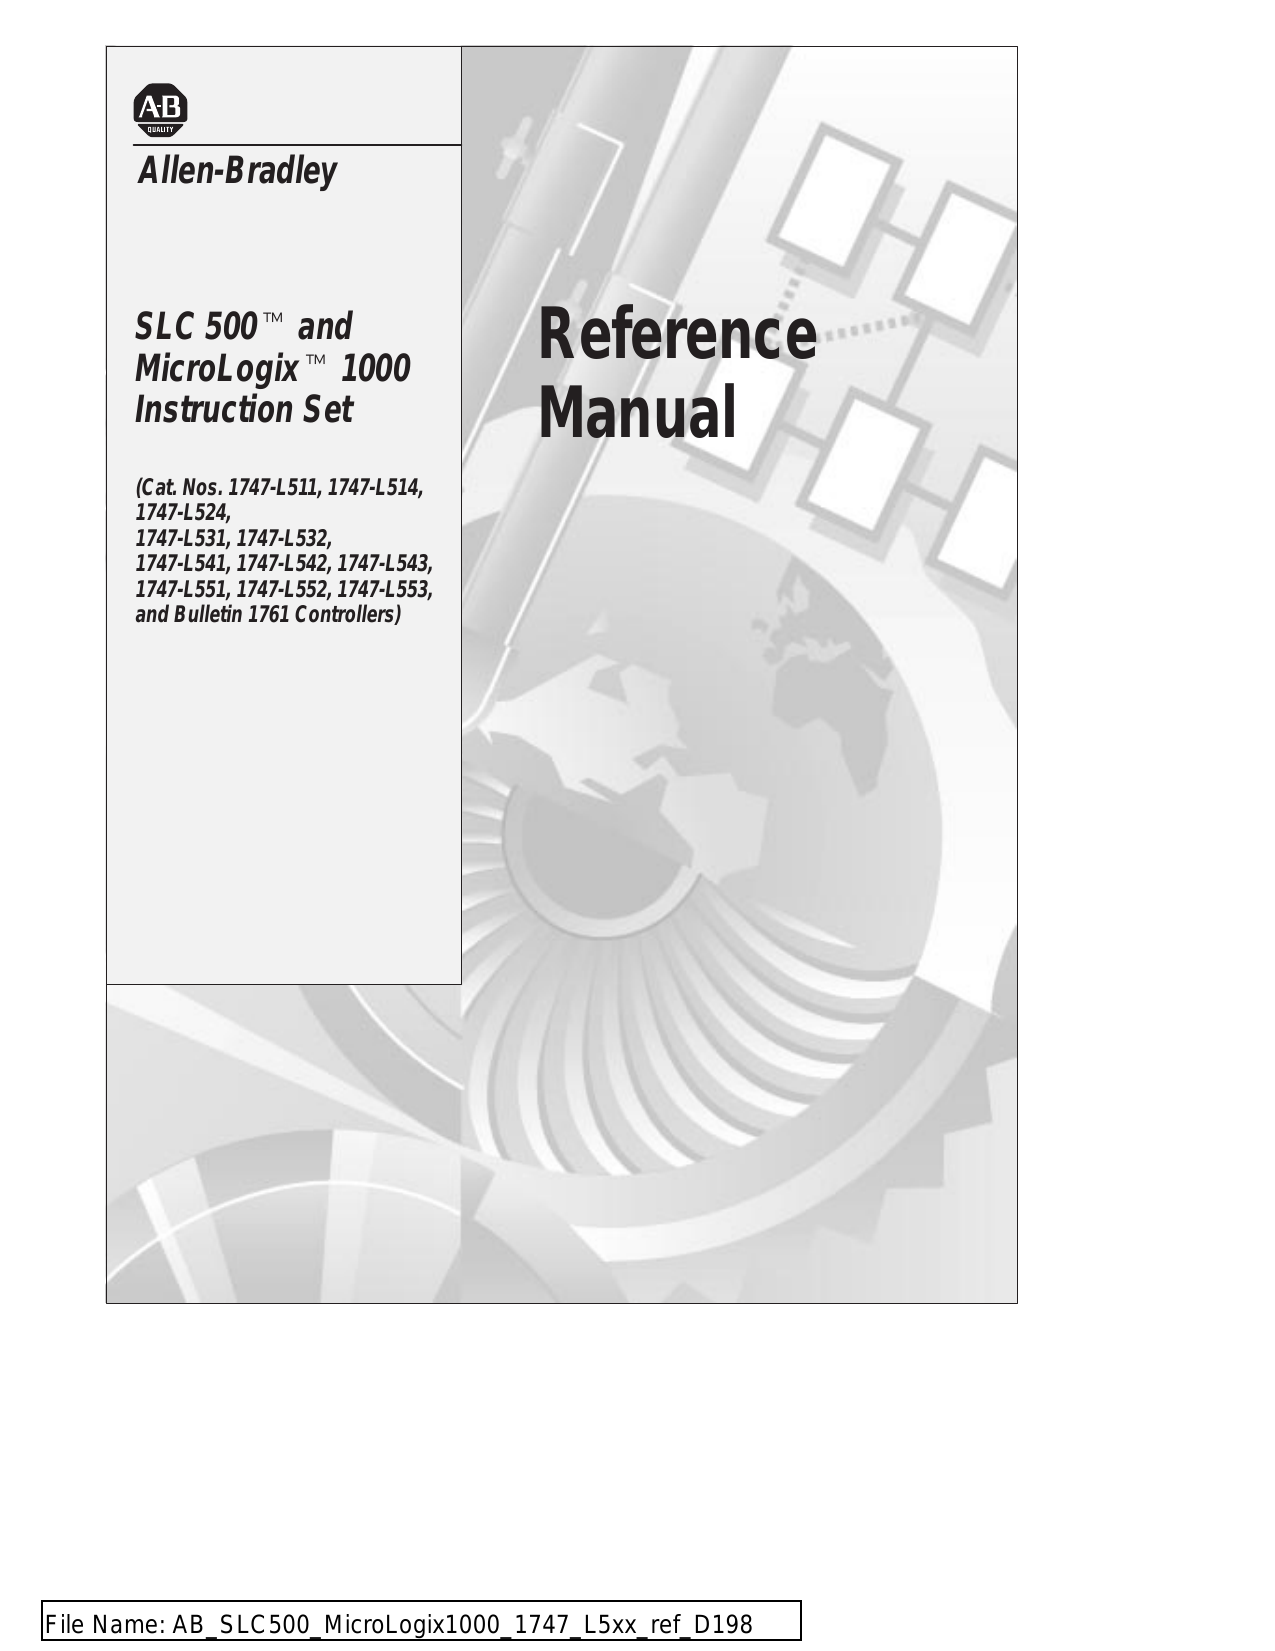 rslogix 500 emulator manual